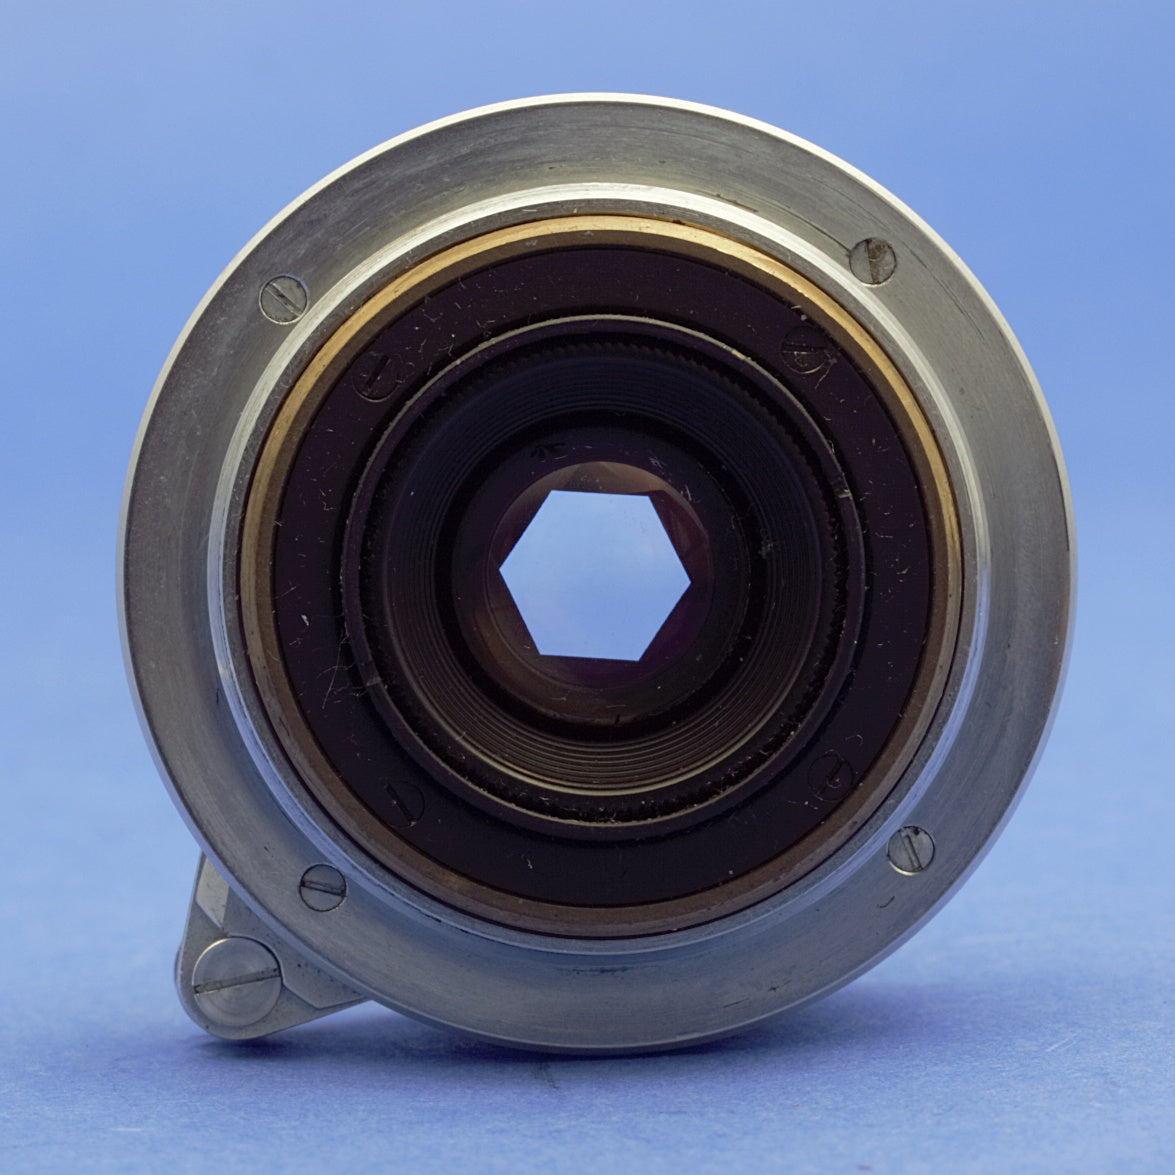 Canon 28mm 2.8 LTM Rangefinder Lens with Finder